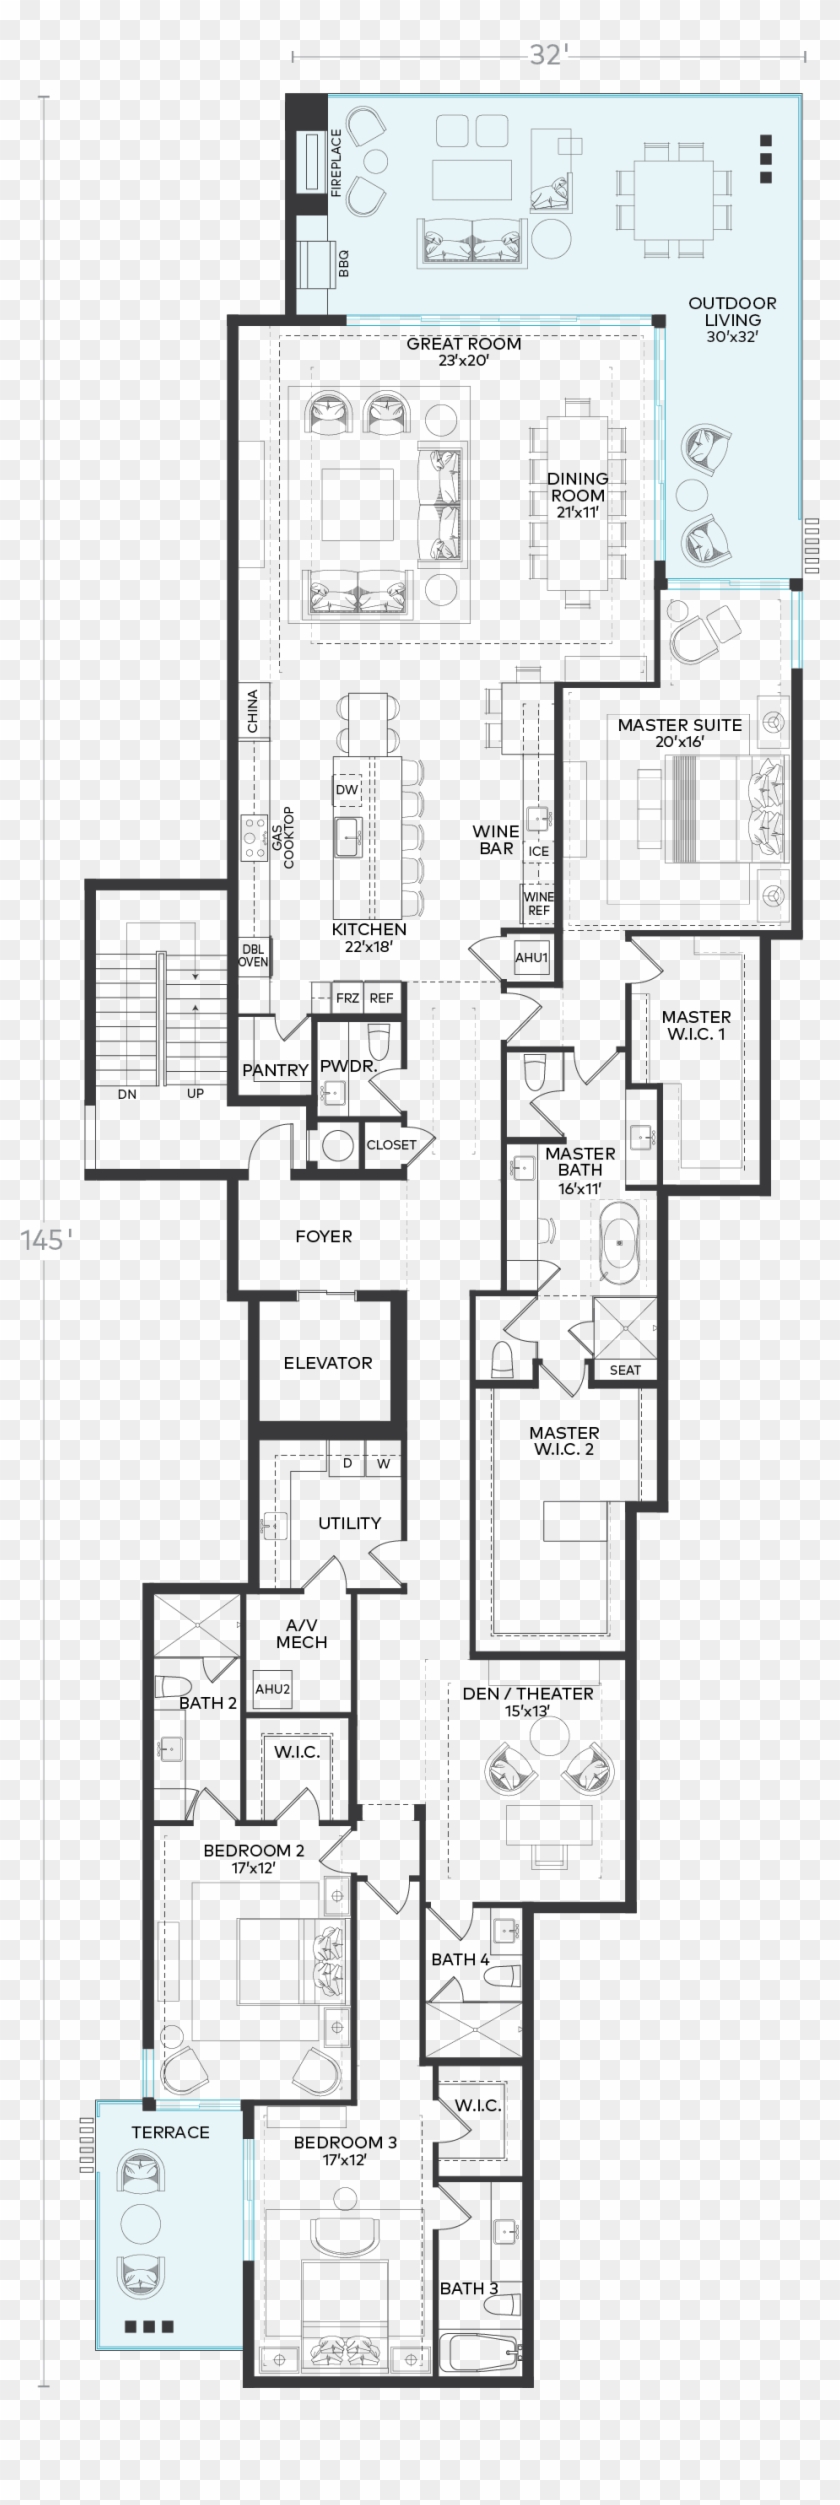 Michelangelo Floorplan - Floor Plan Clipart #3808065